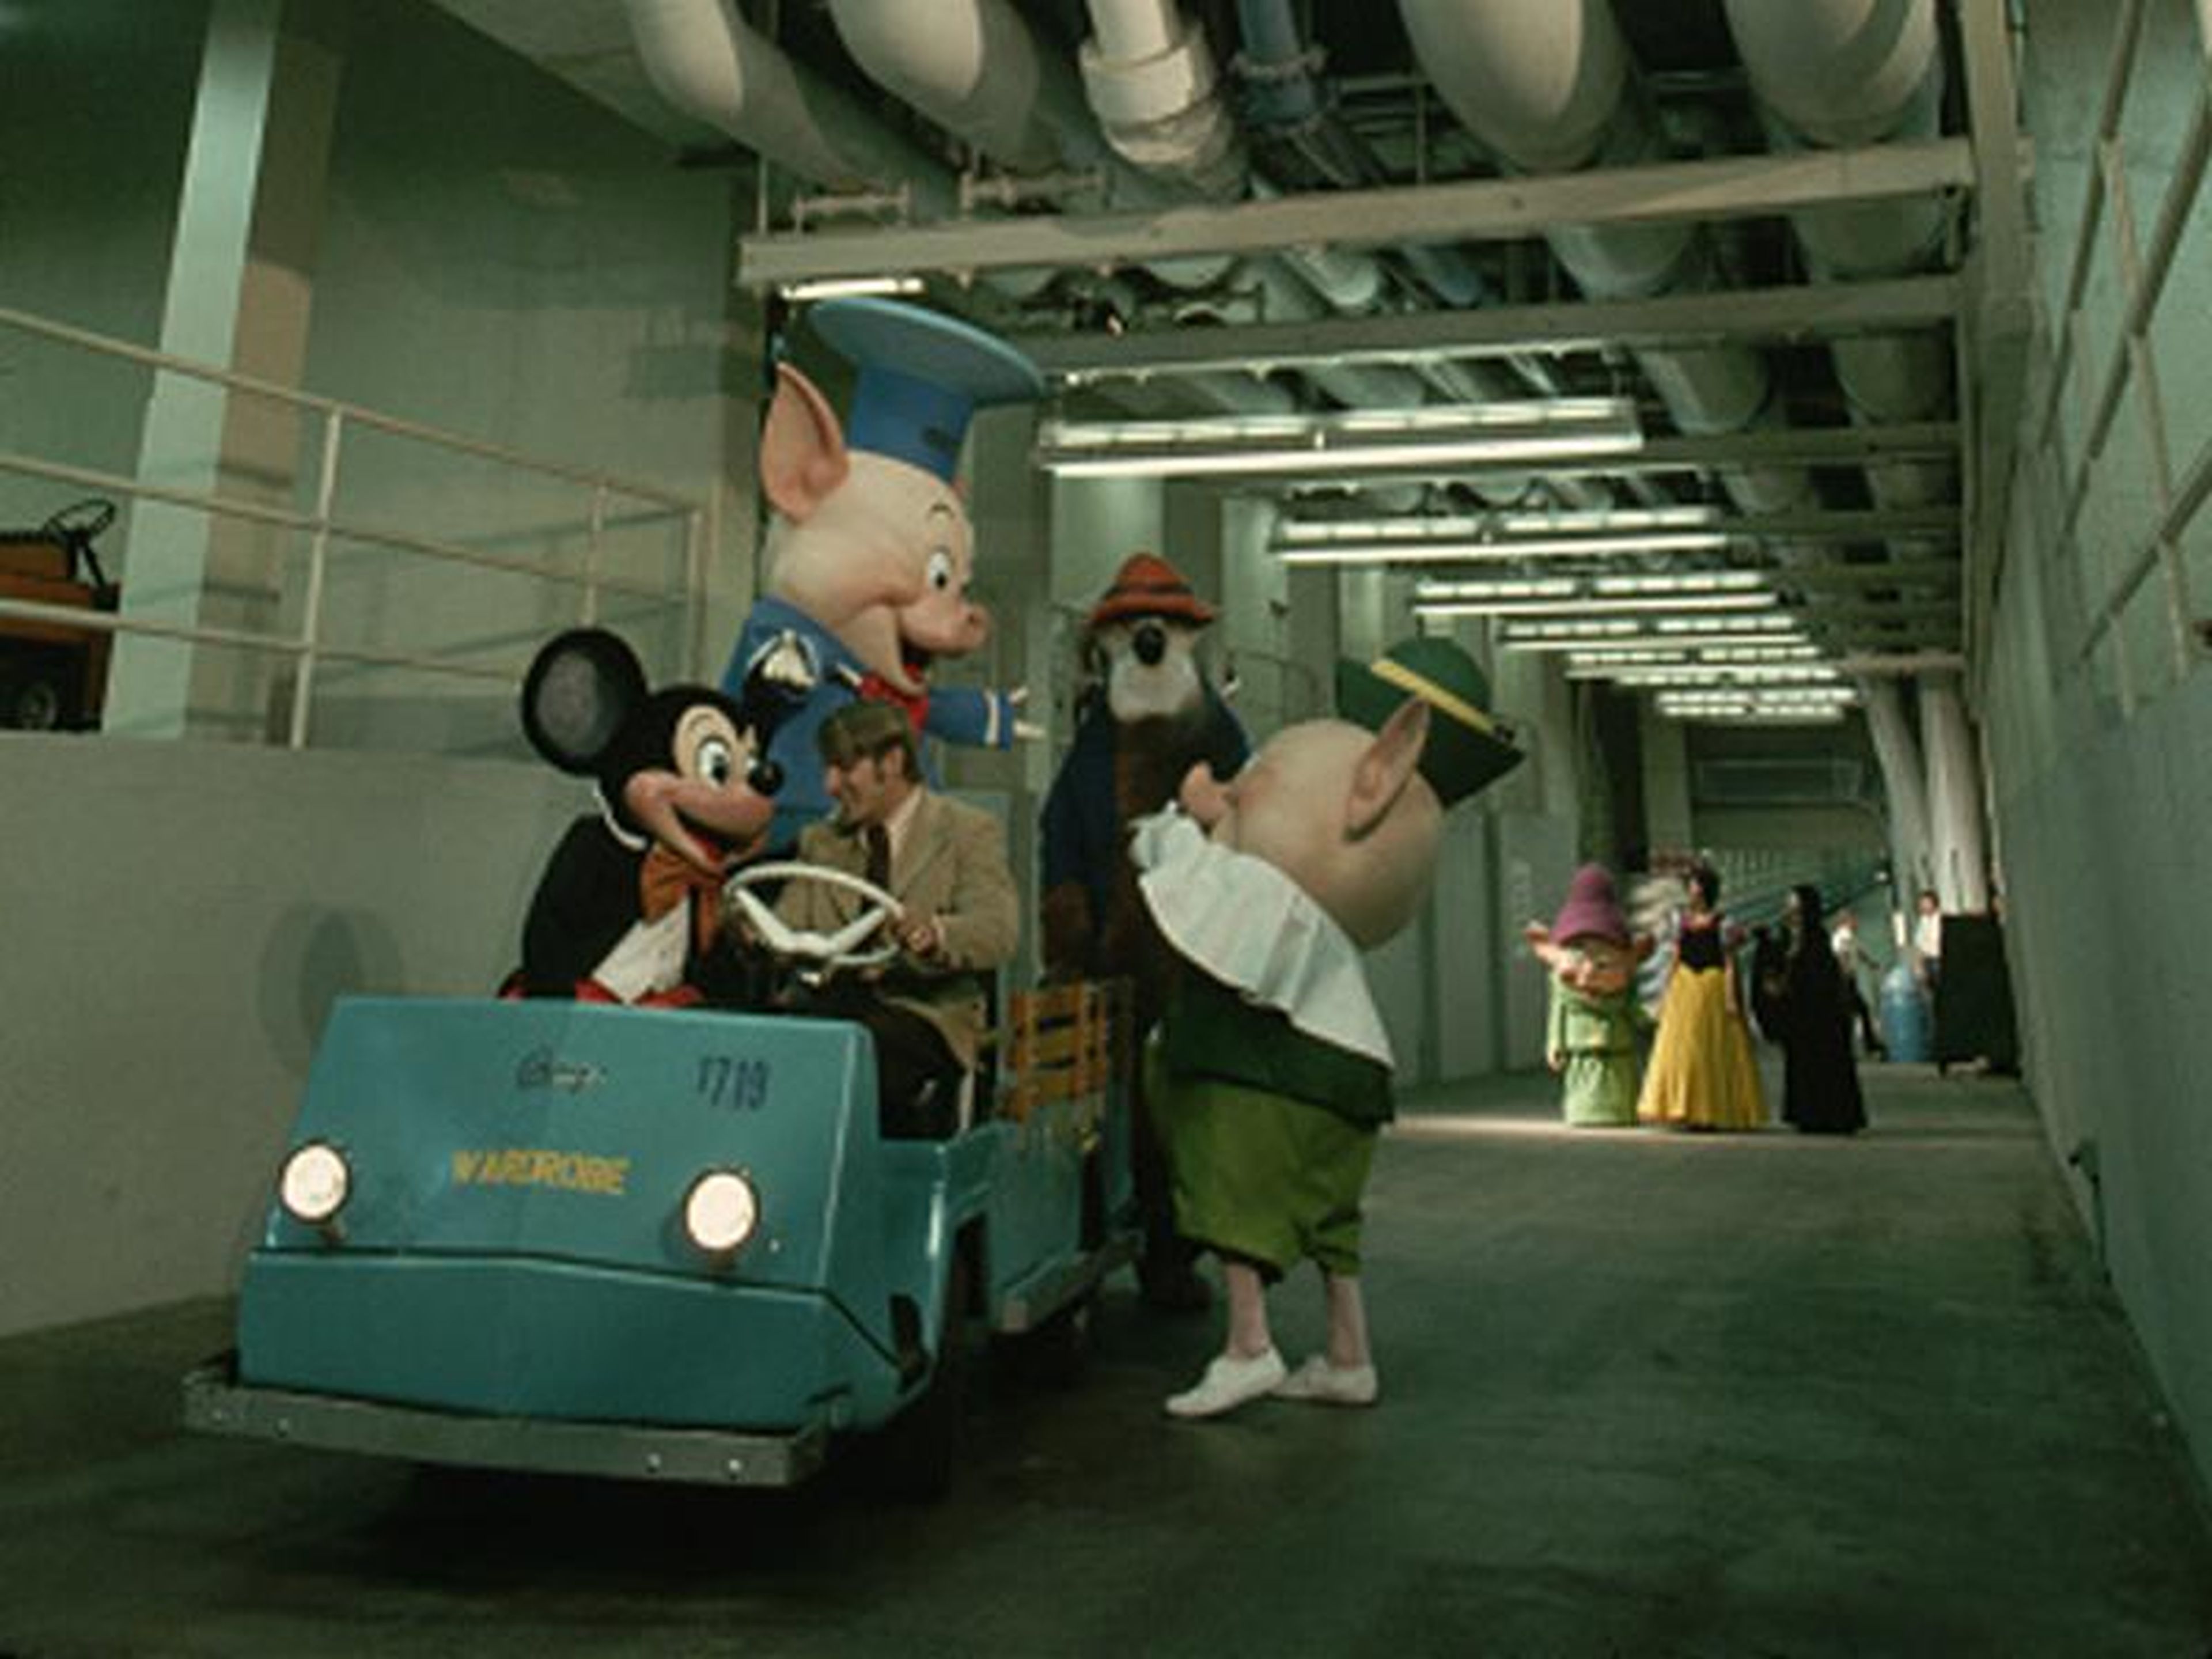 Los túneles debajo de Disney World que usan los miembros del equipo para moverse.